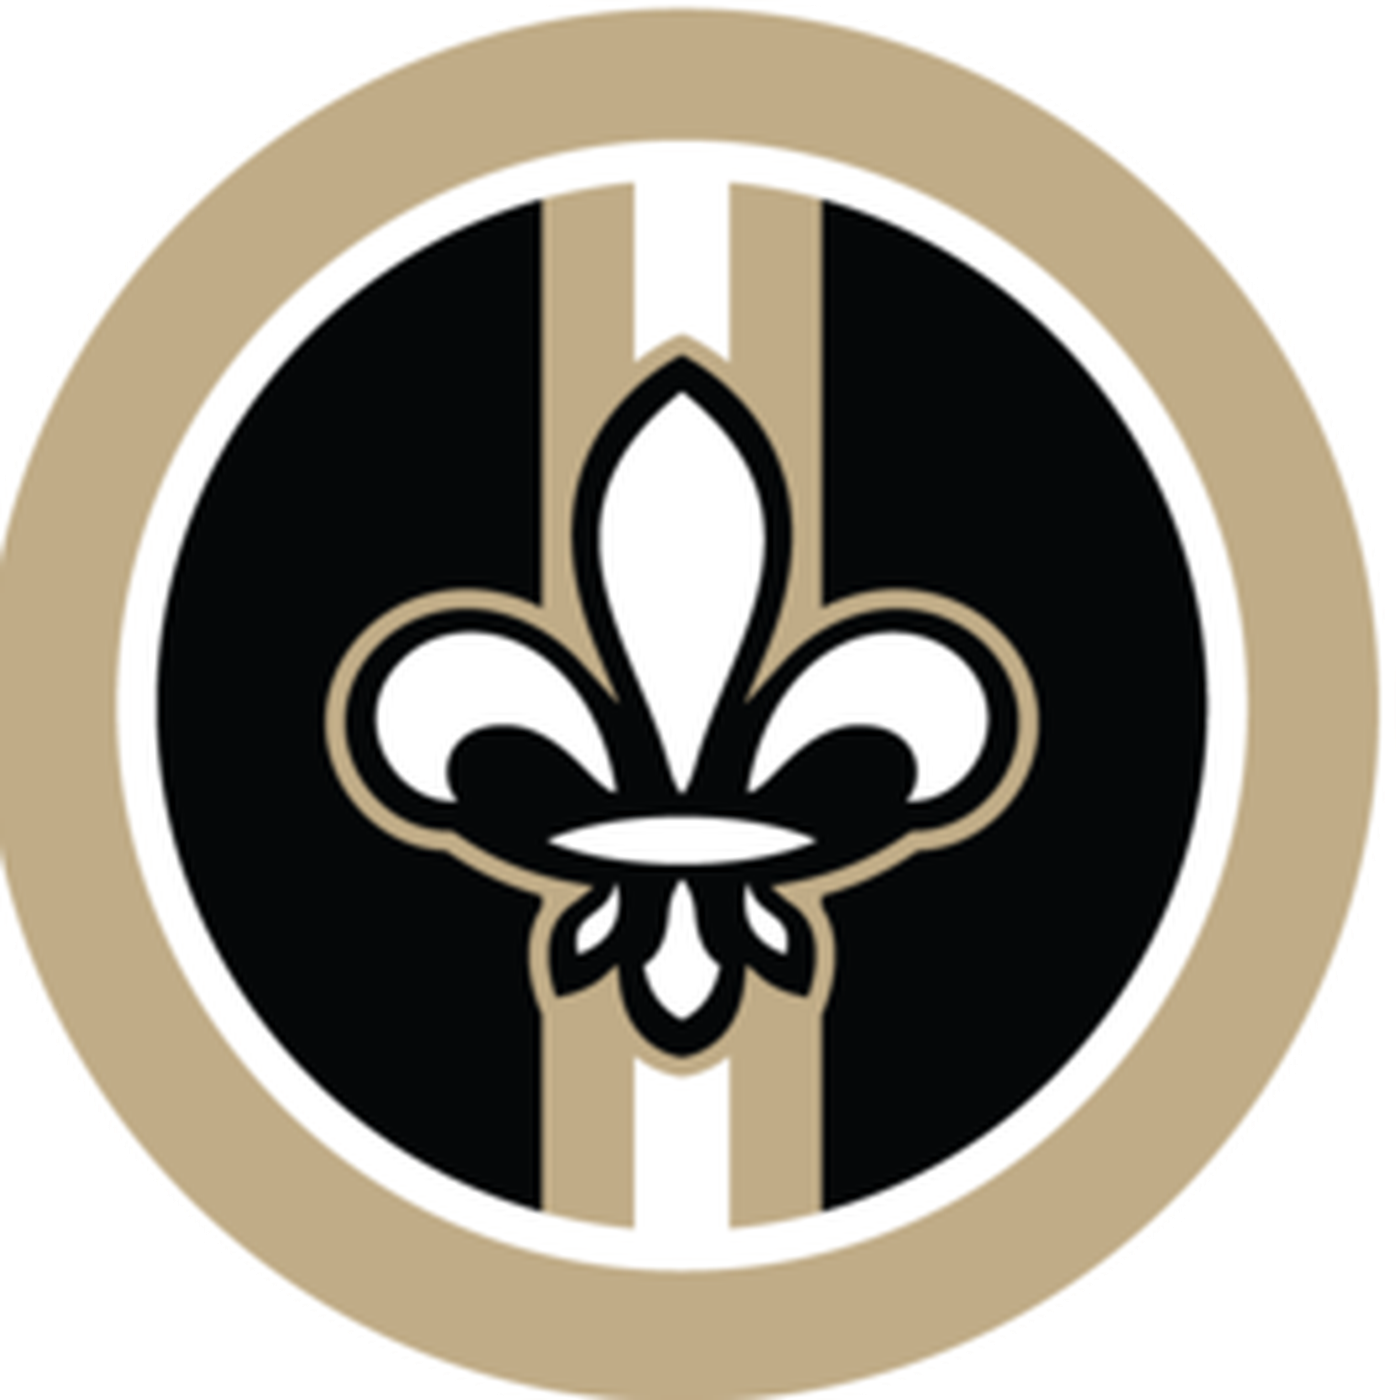 New Orleans Saints Clipart - New Orleans Saints Clip Art File (1400x1400)